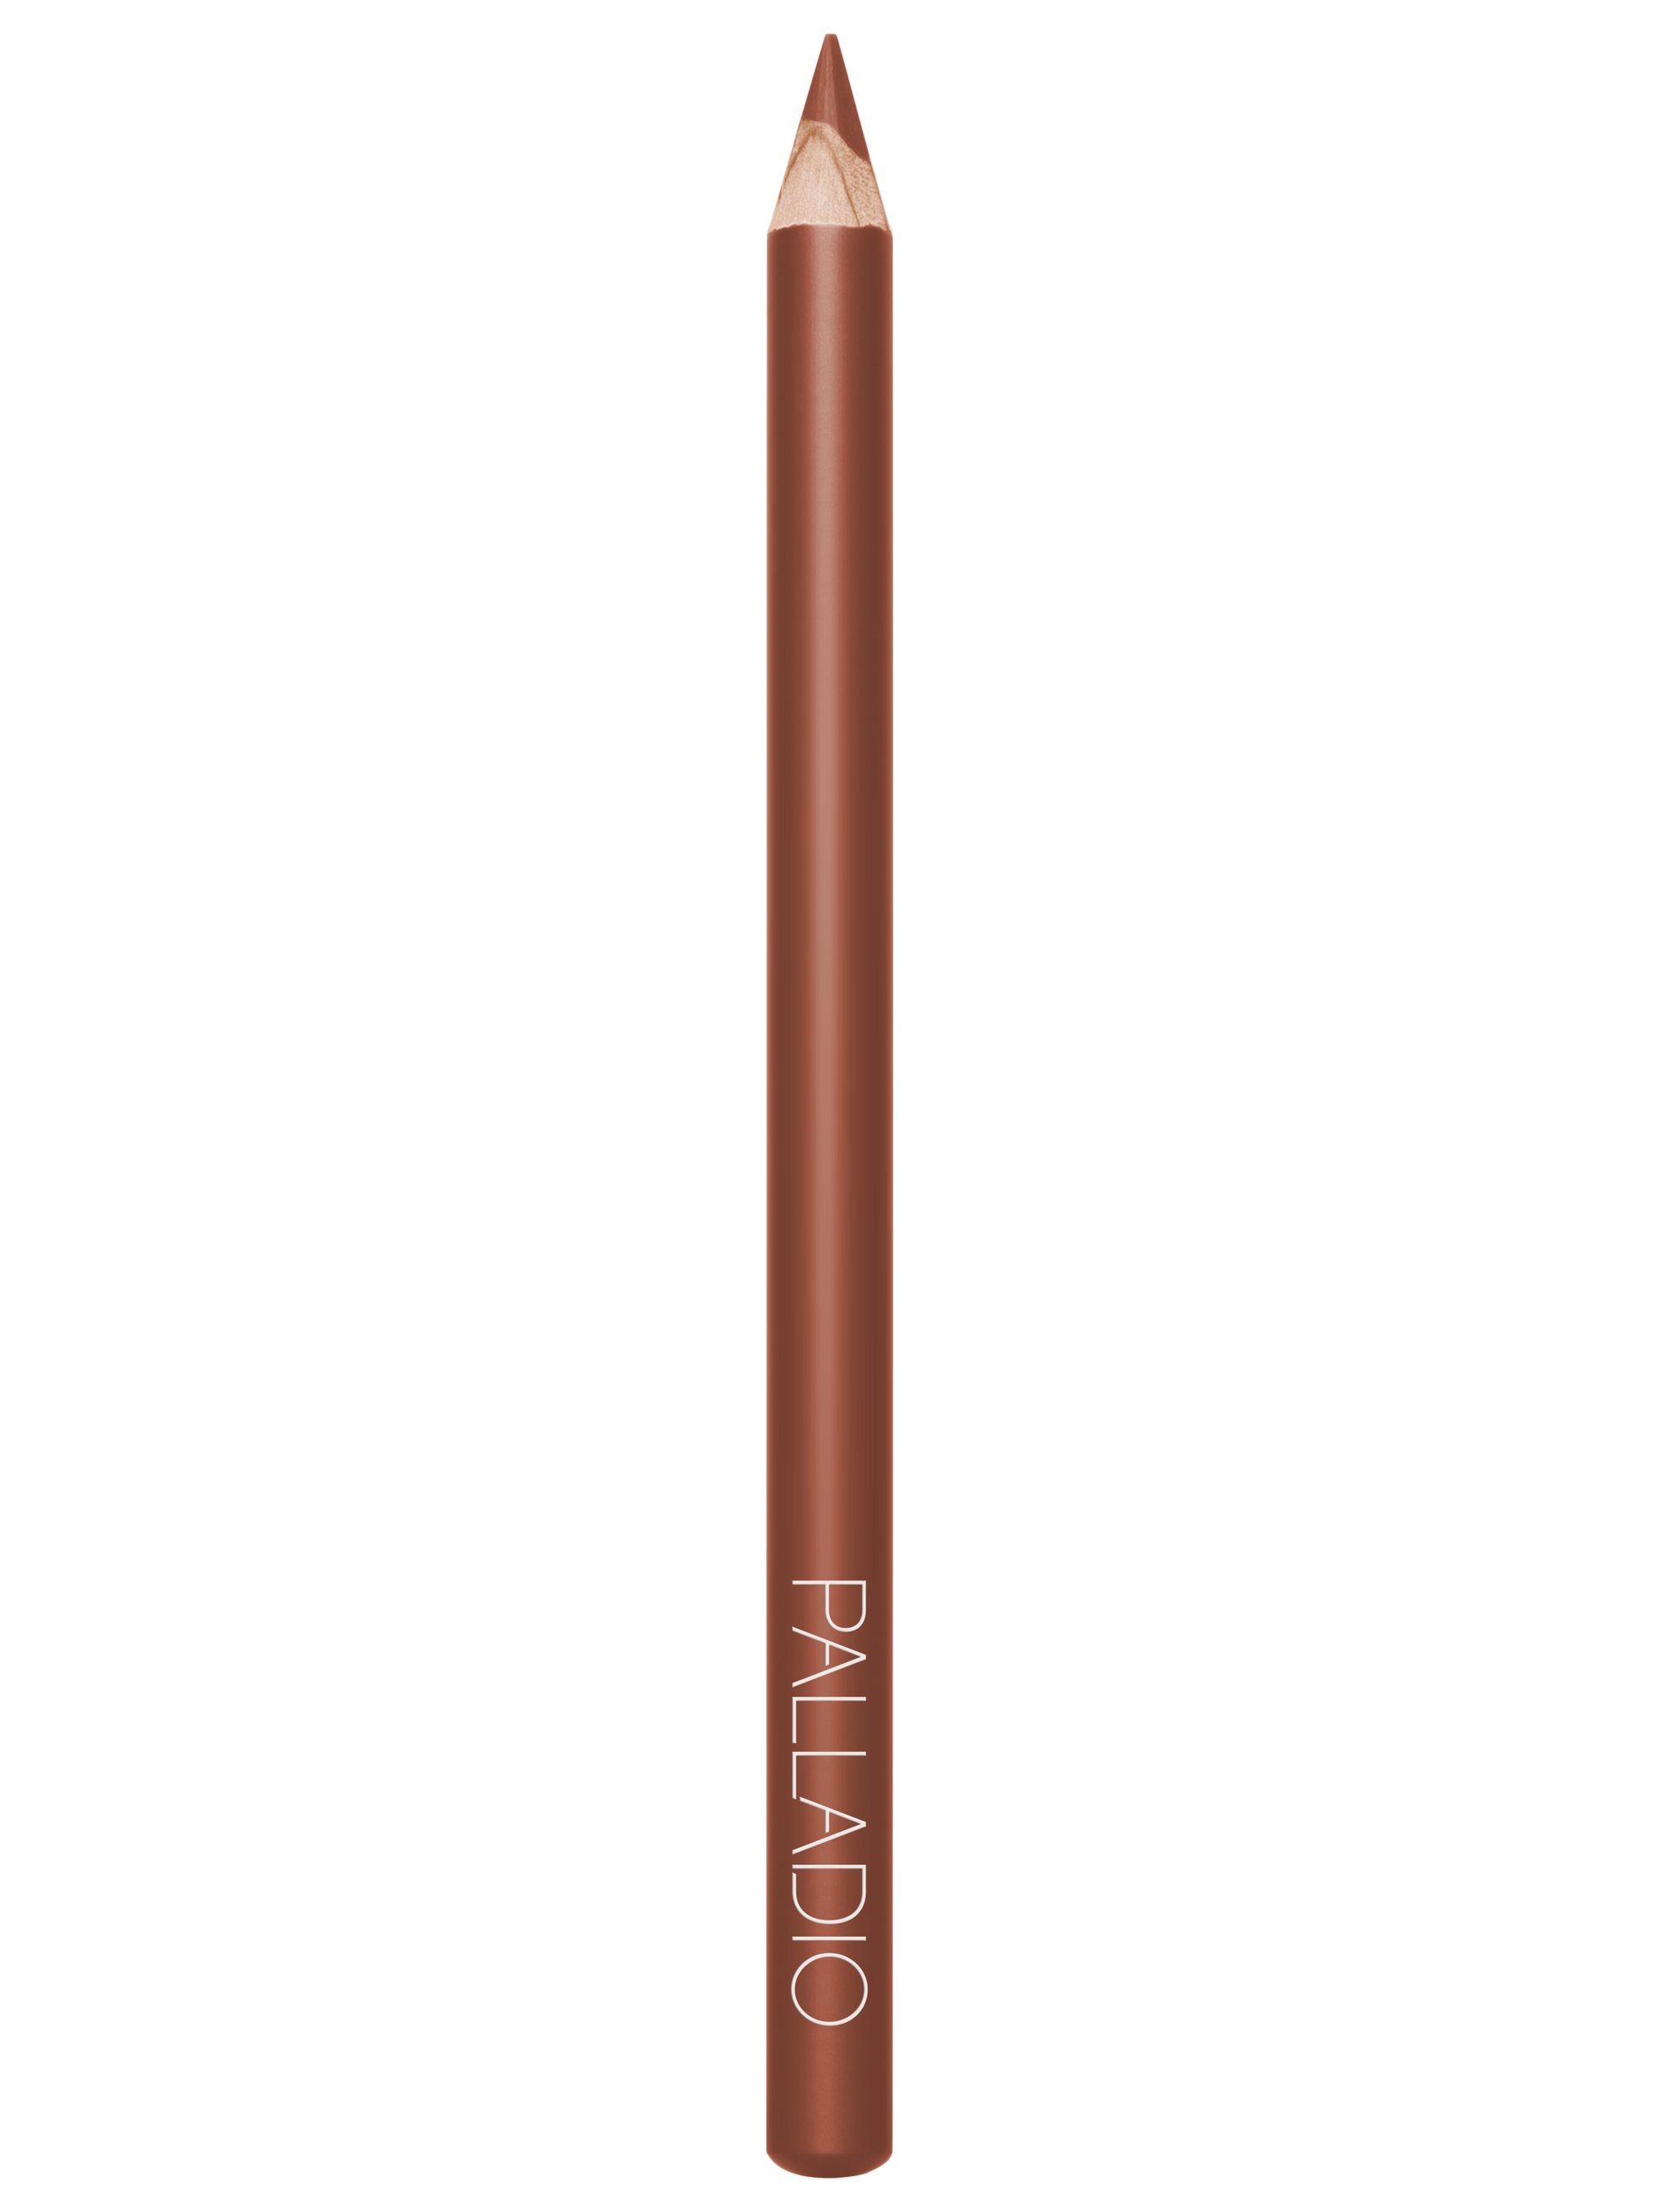 Palladio Lipstick Liner PencilLip LinerPALLADIOColor: Spice Ll288